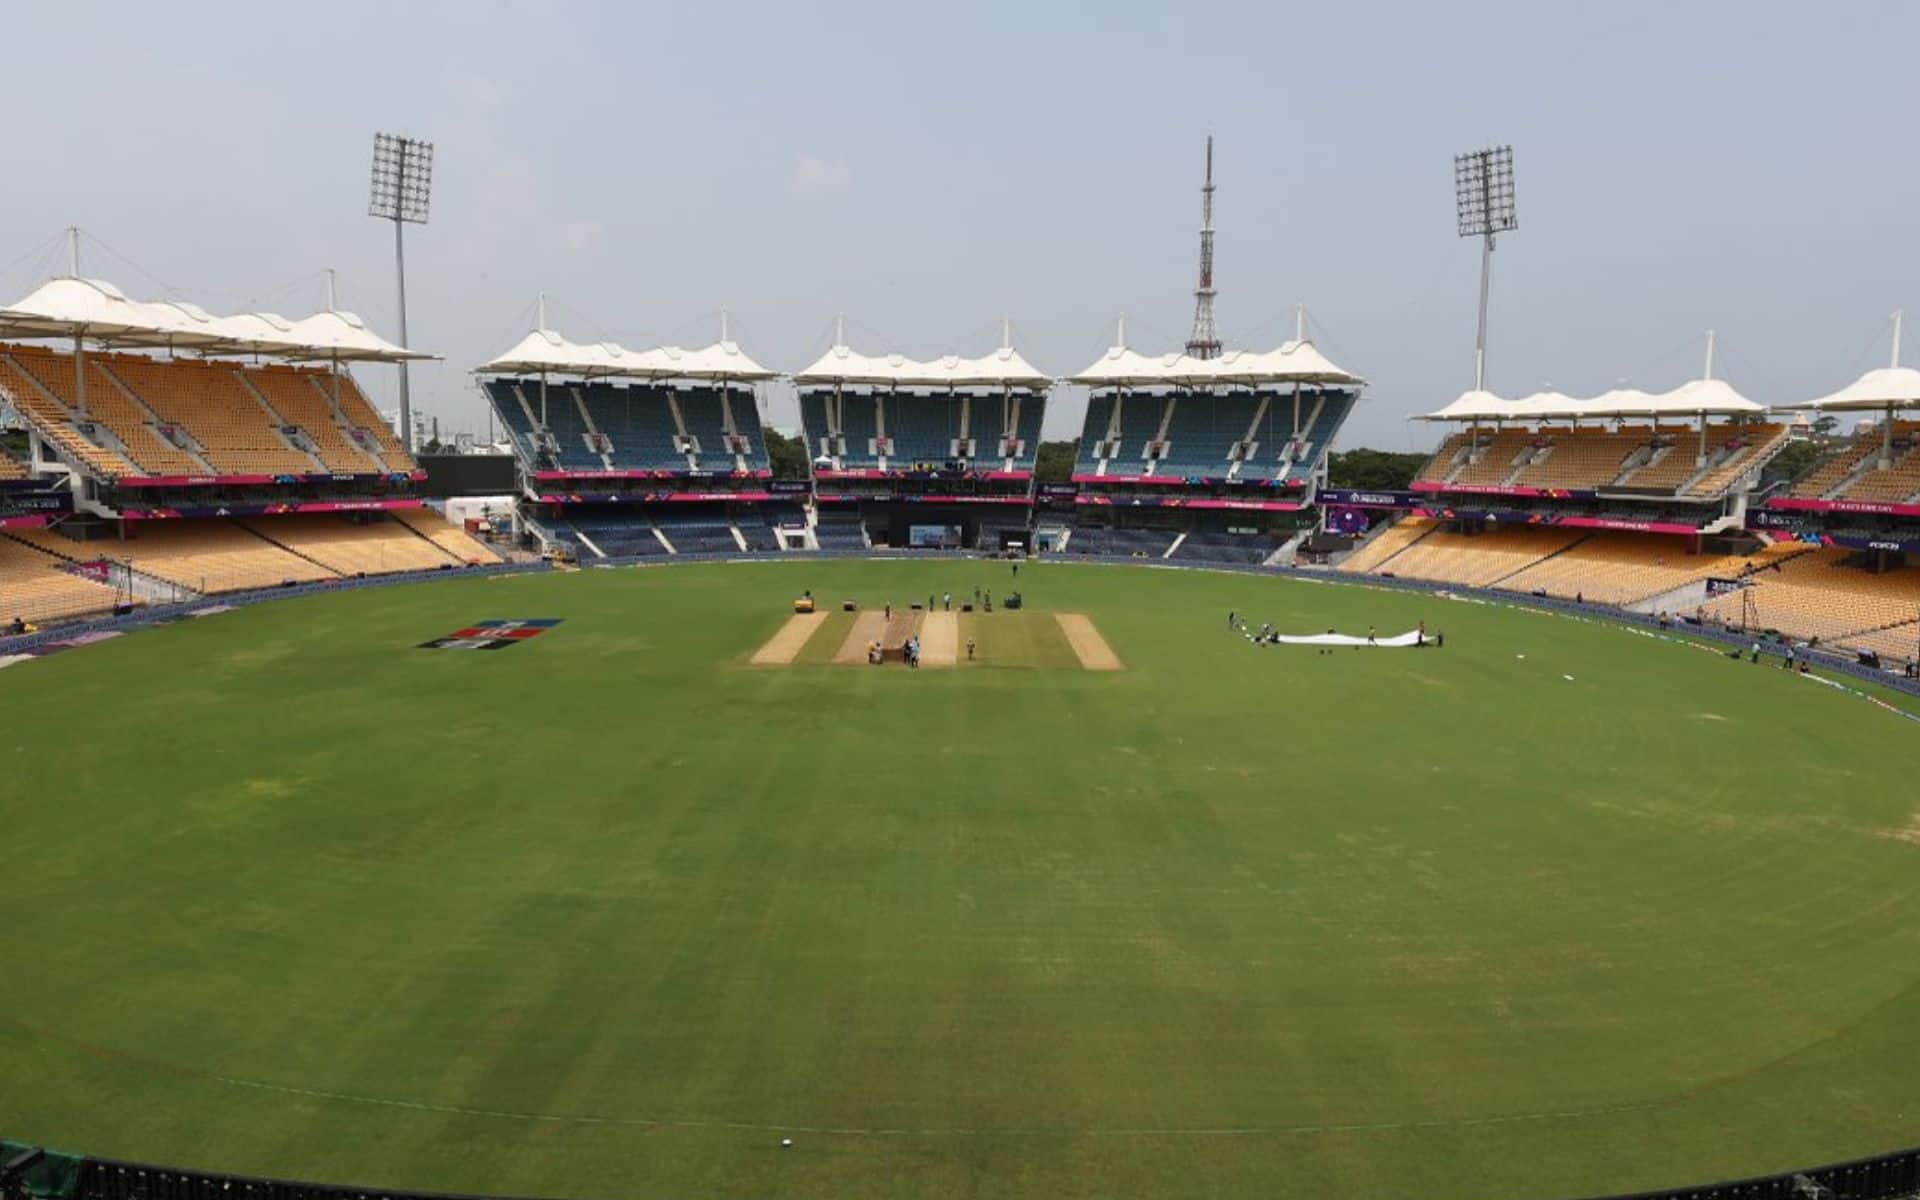 MA Chidambaram Stadium, Chennai [x.com]